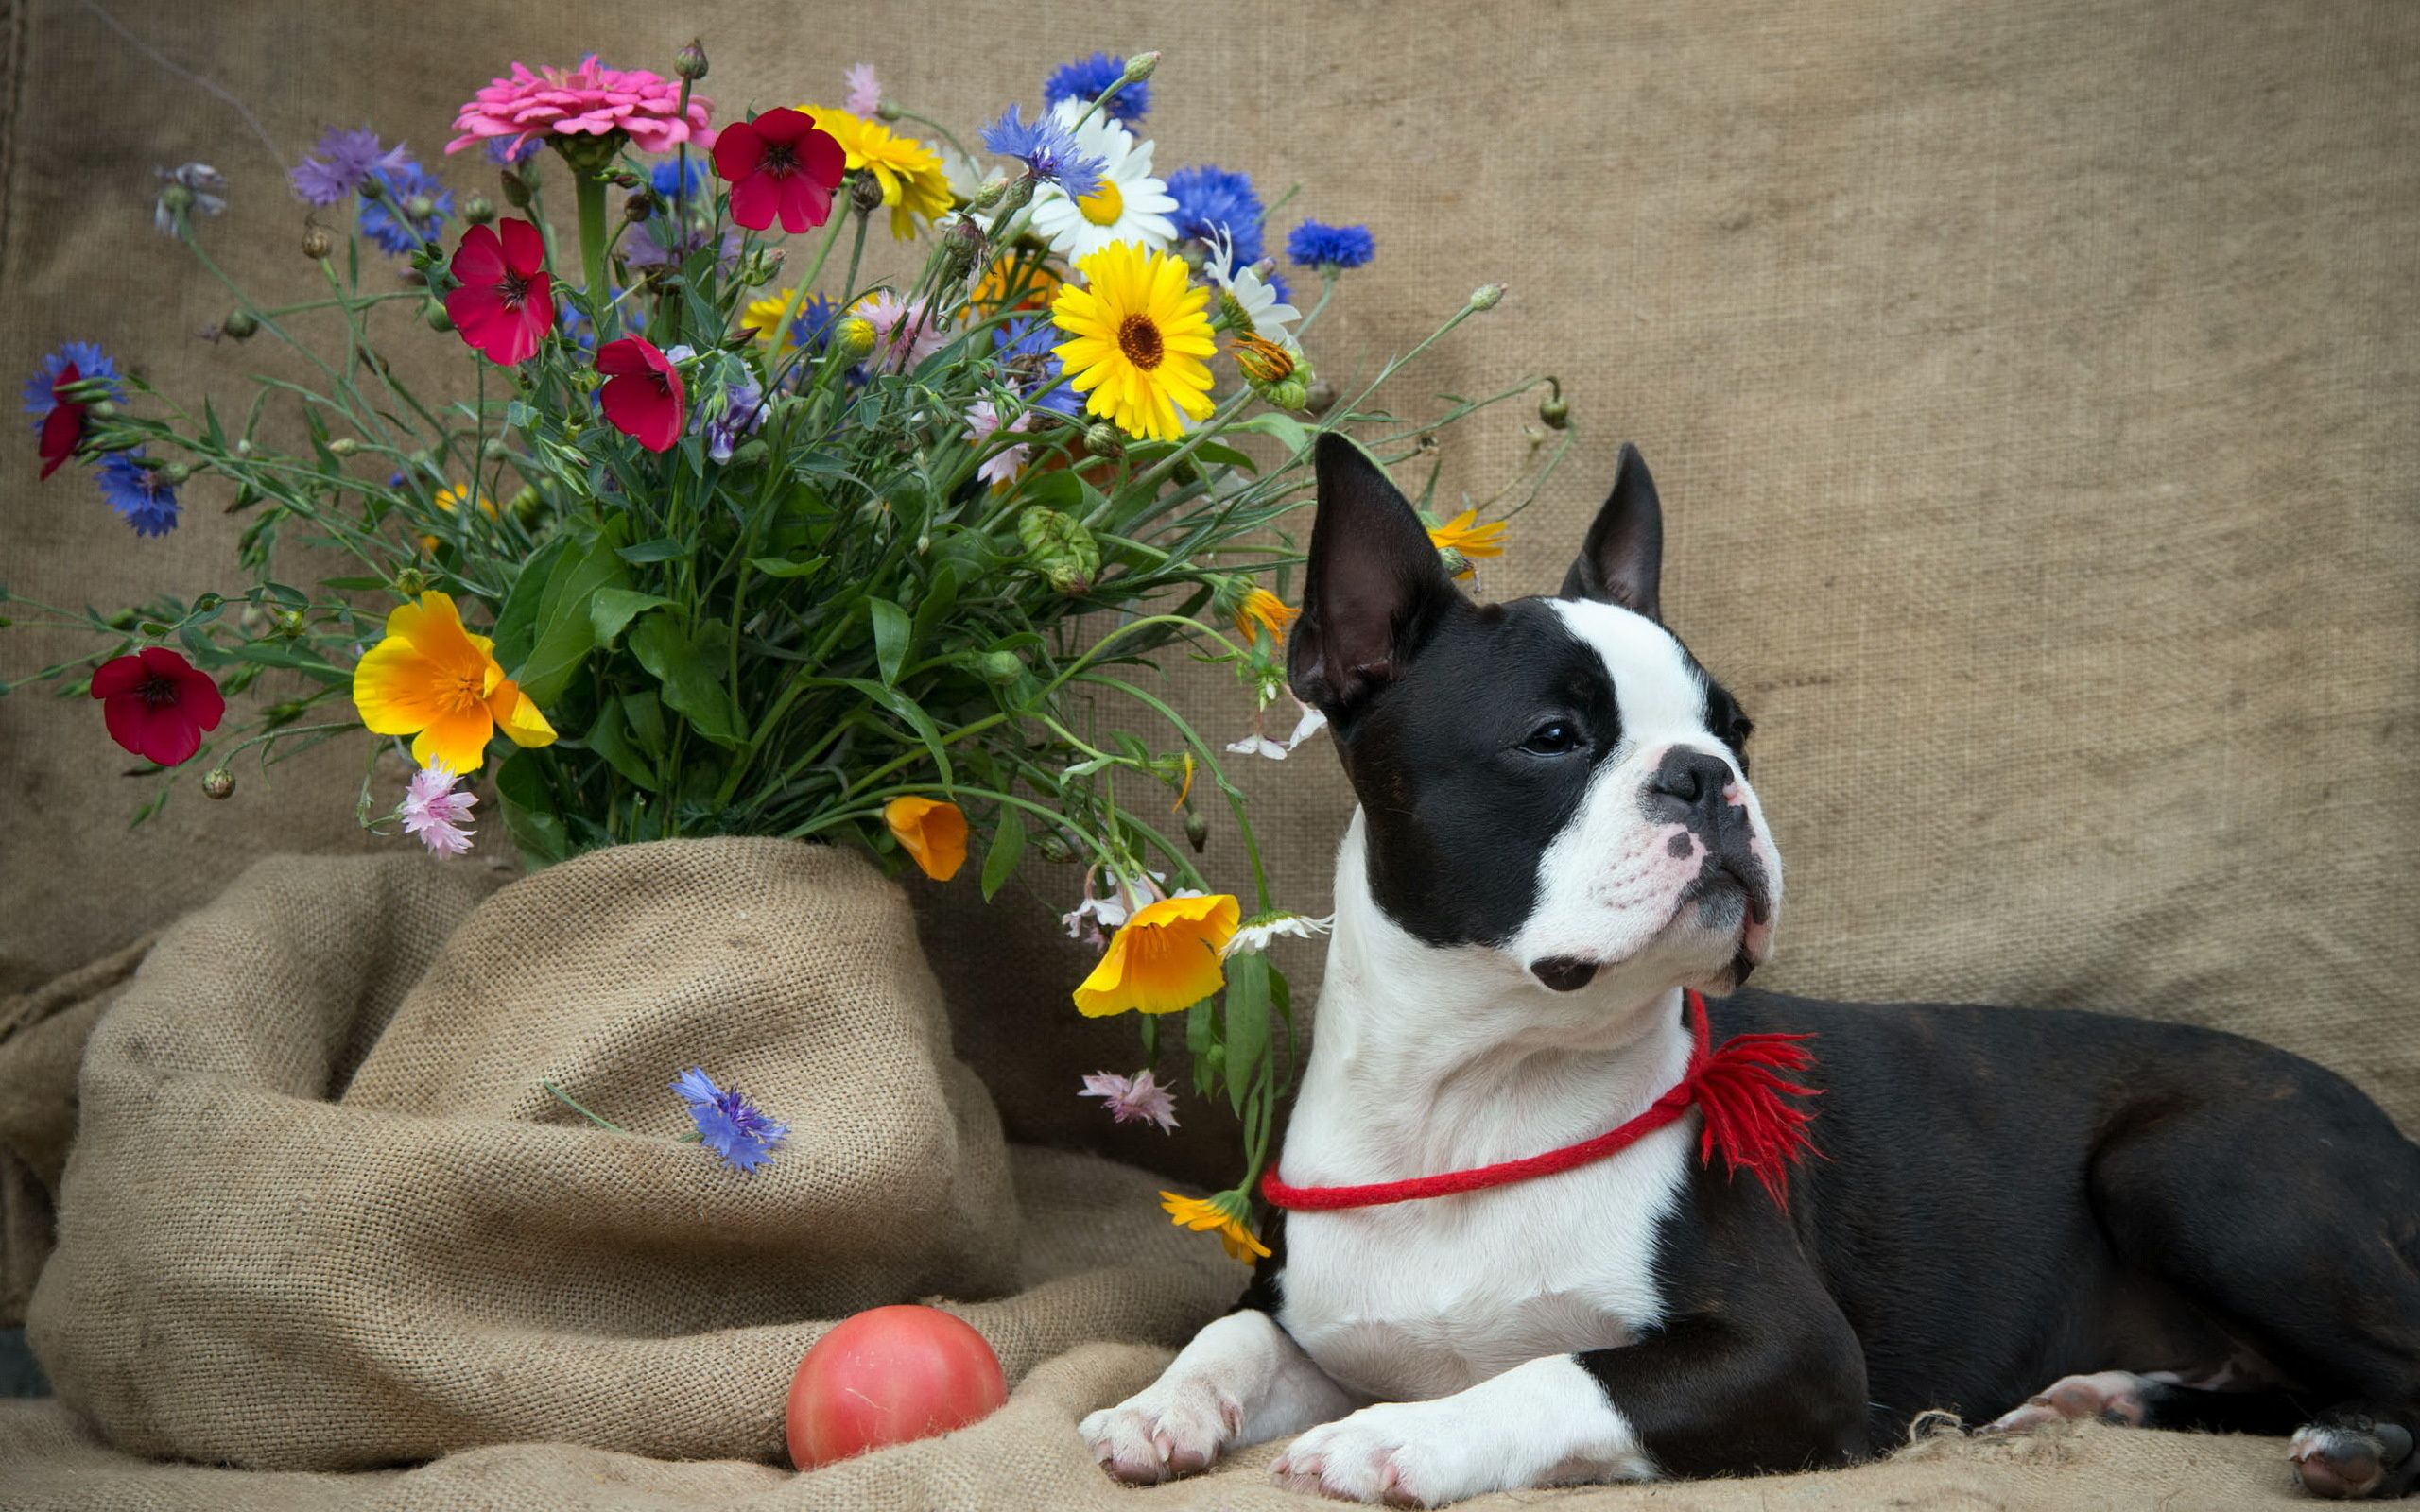 Boston Terrier flowers dog wallpaper 2560x1600 132622